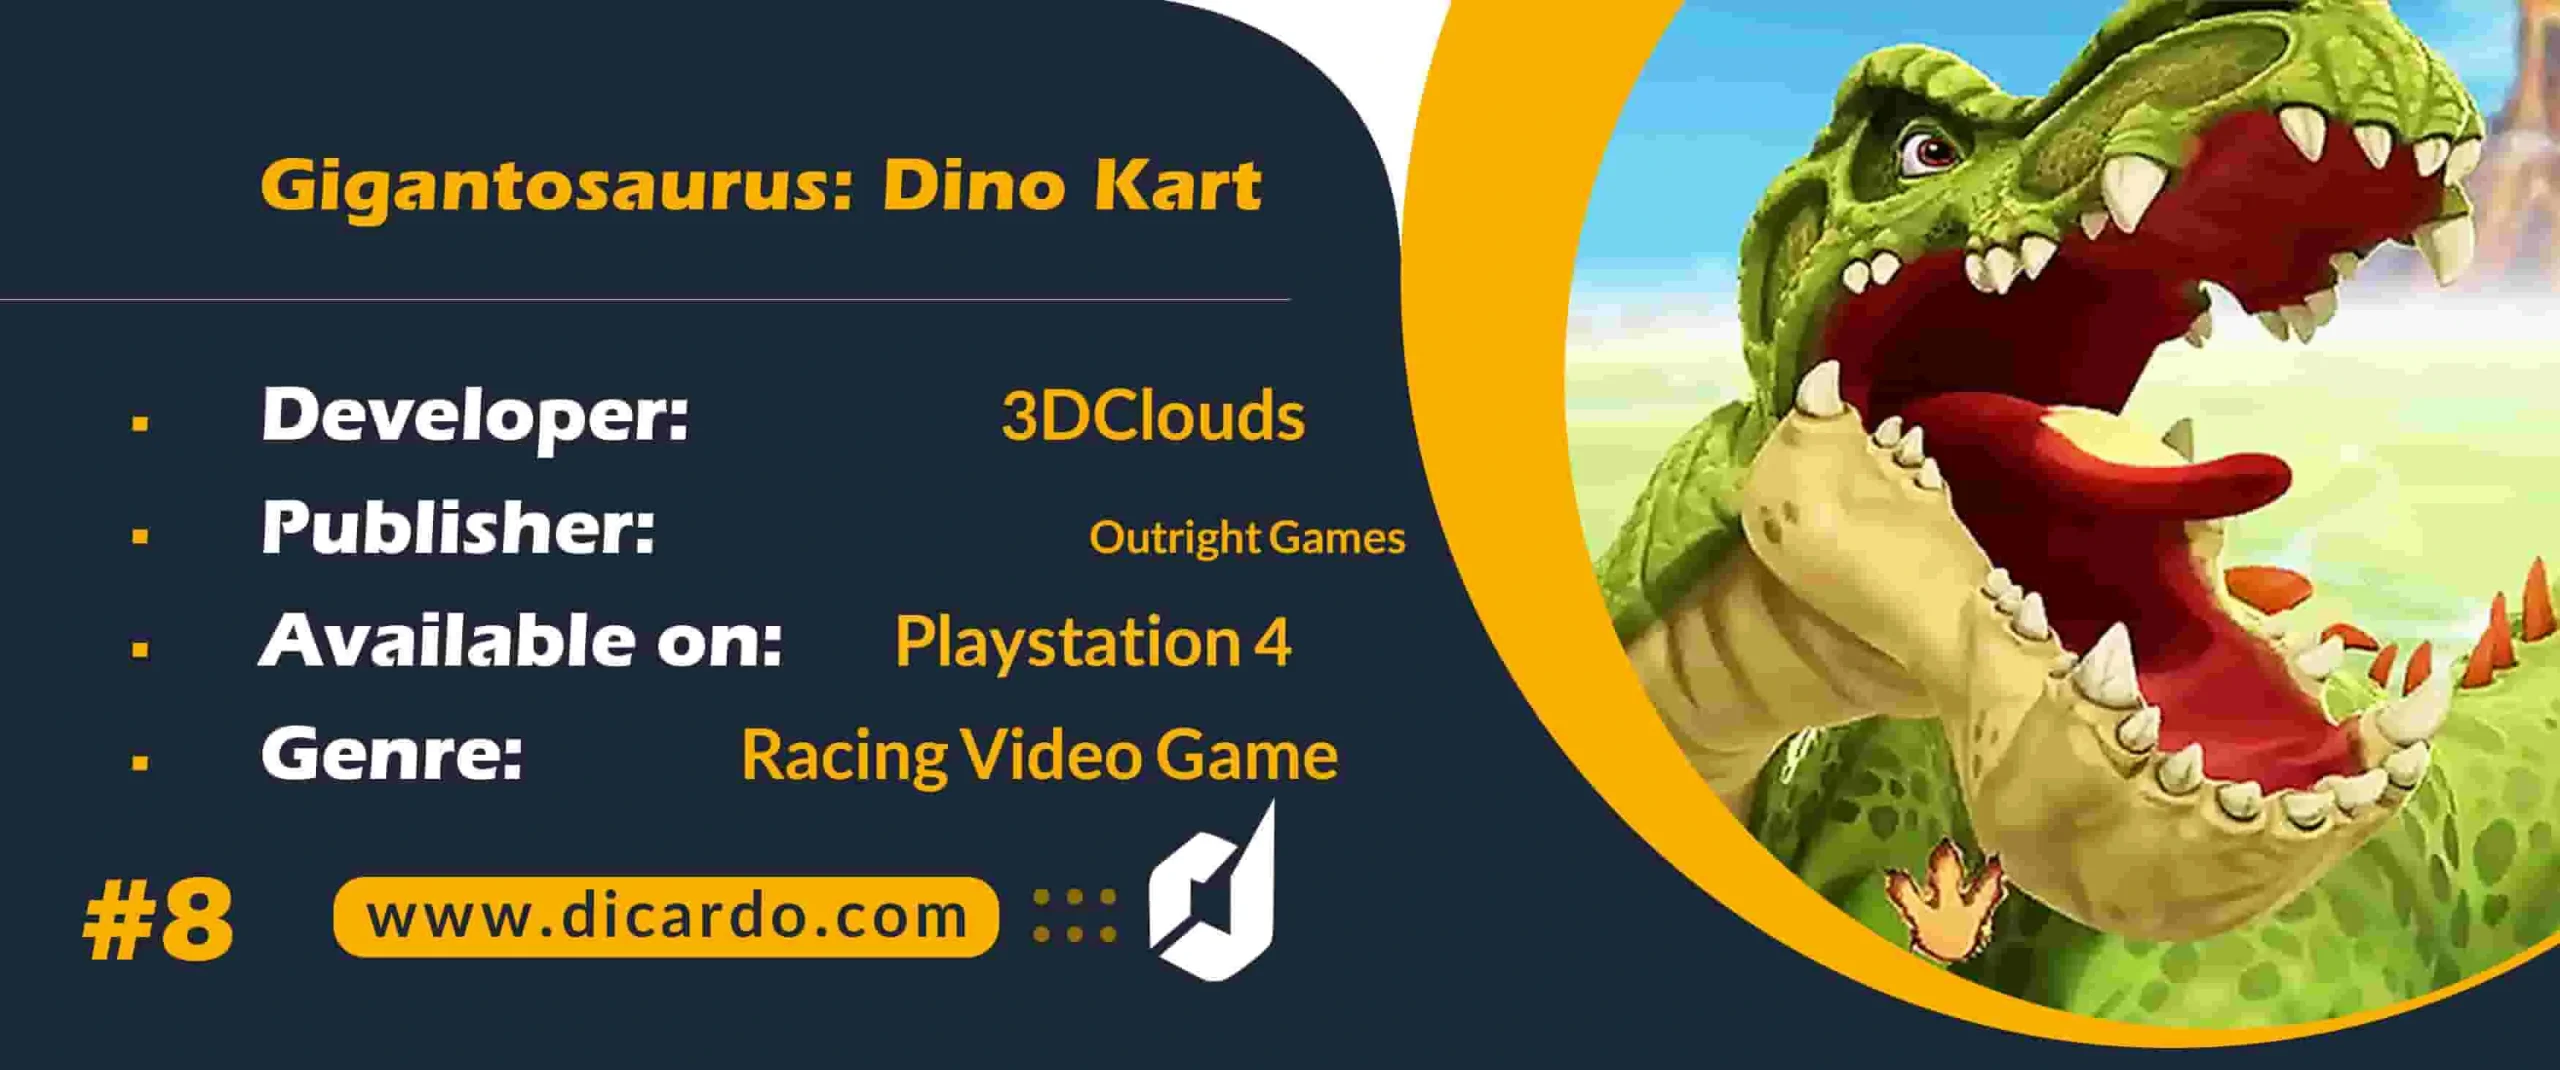 #8 جایگنتوساوروس دینو کارت Gigantosaurus: Dino Kart